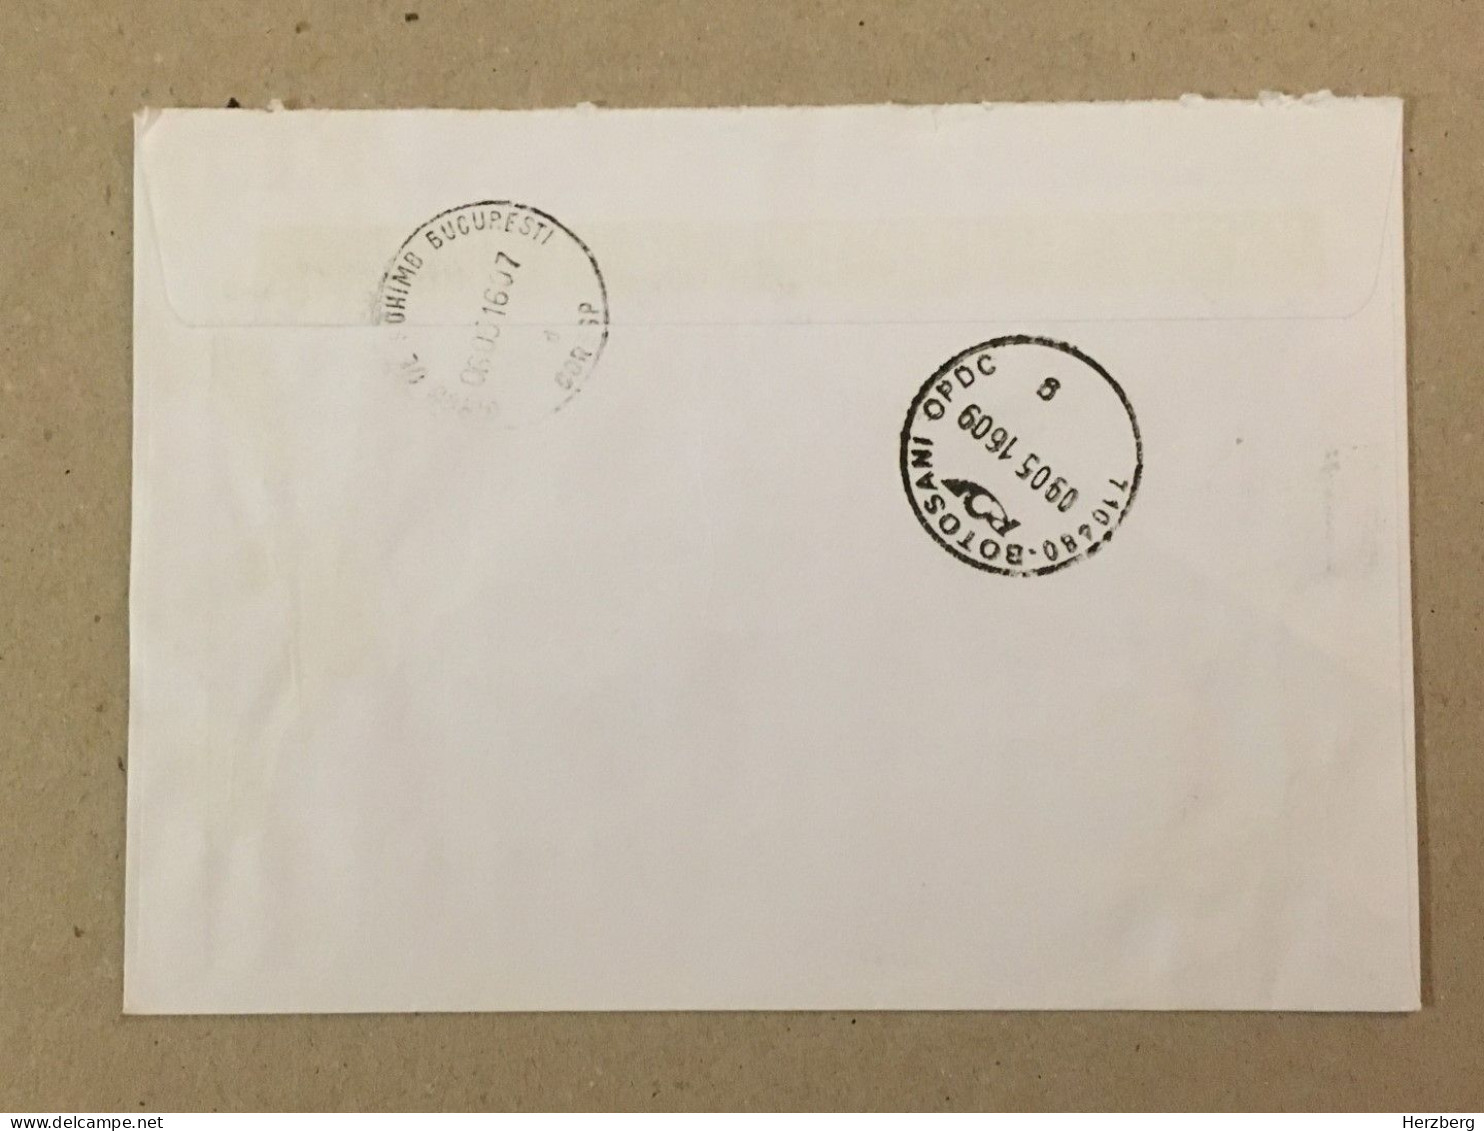 Hungary Magyarorszag Used Letter Stamp Cover Furniture Hawk Eagle Label Printed Sticker Stamp Registered Letter 2016 - Briefe U. Dokumente